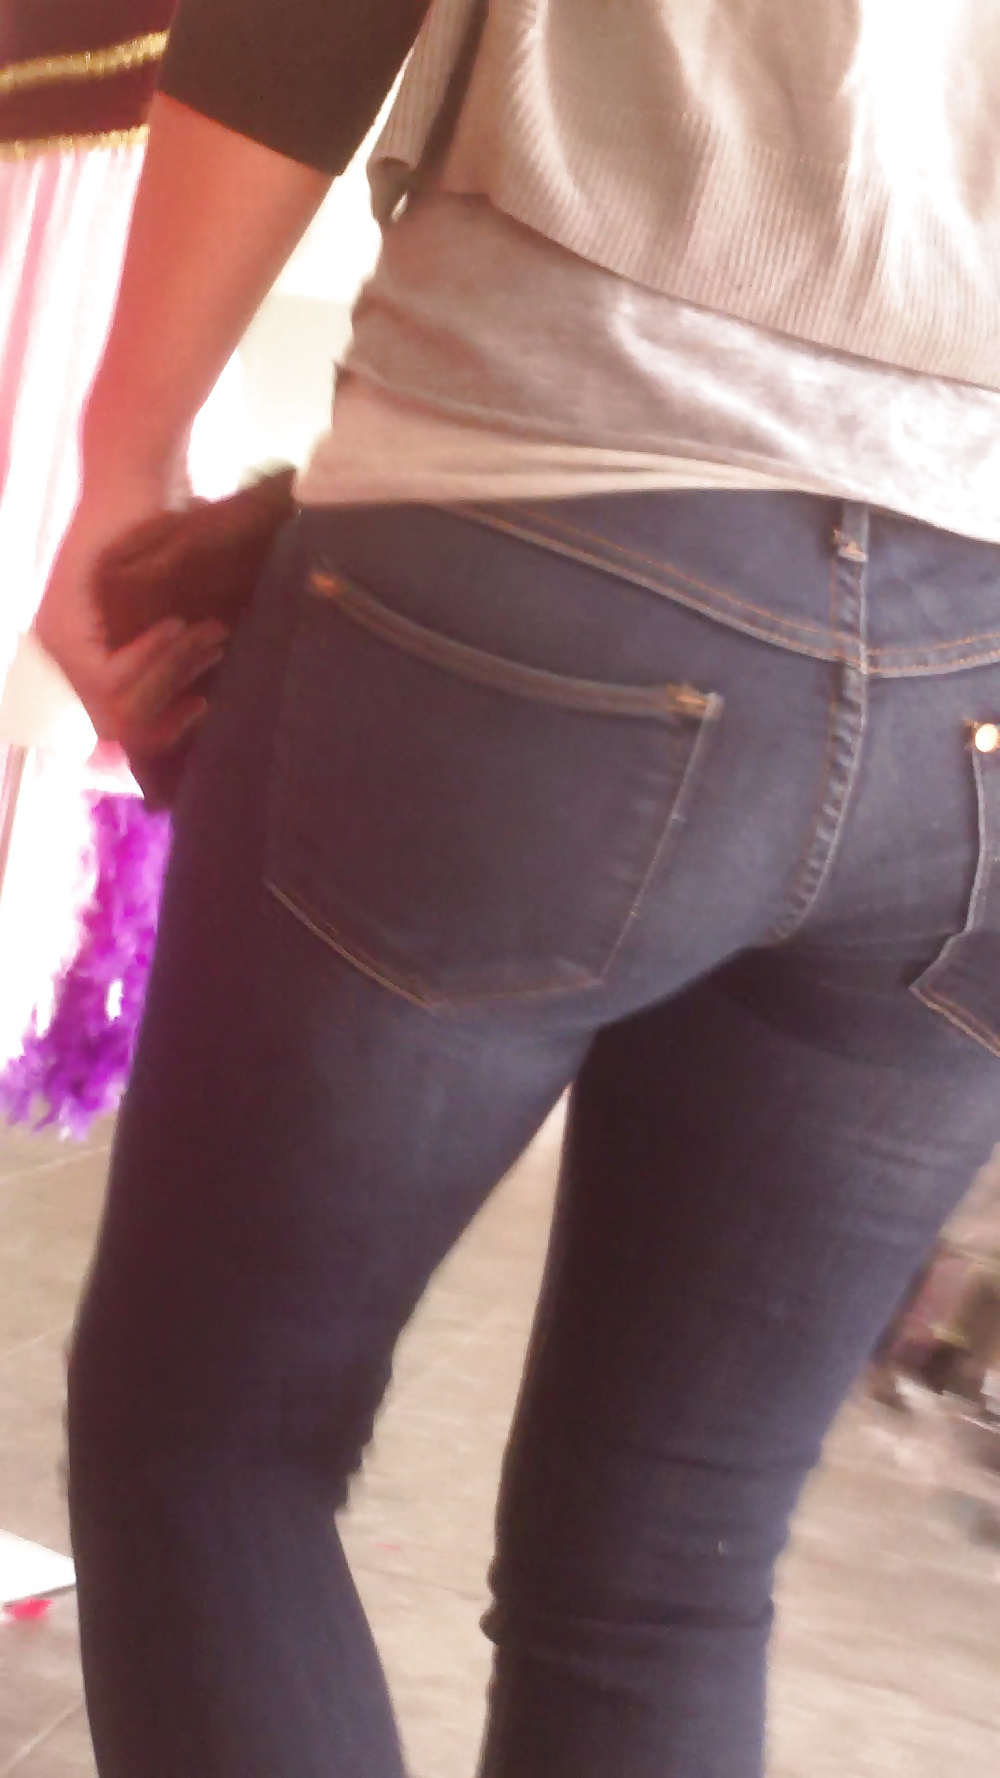 Popular teen girls ass & butt in jeans Part 6 #32009998